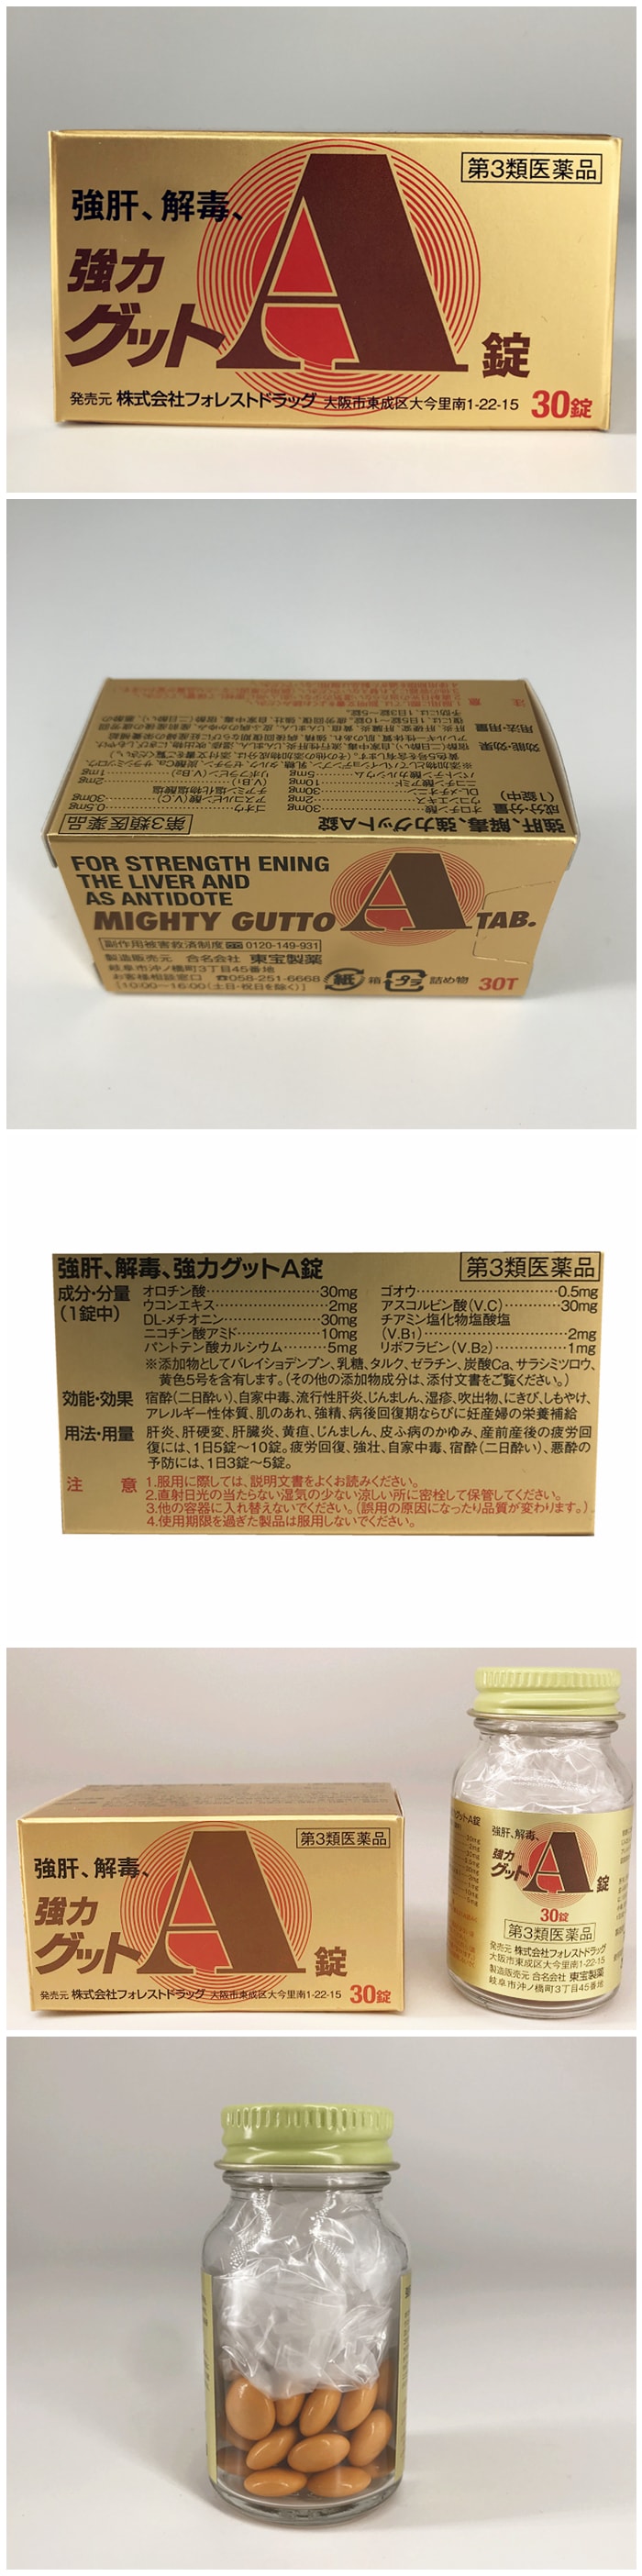 【日本直效郵件】日本 MIGHTY GUTTO 強肝解毒 解酒丸 30粒